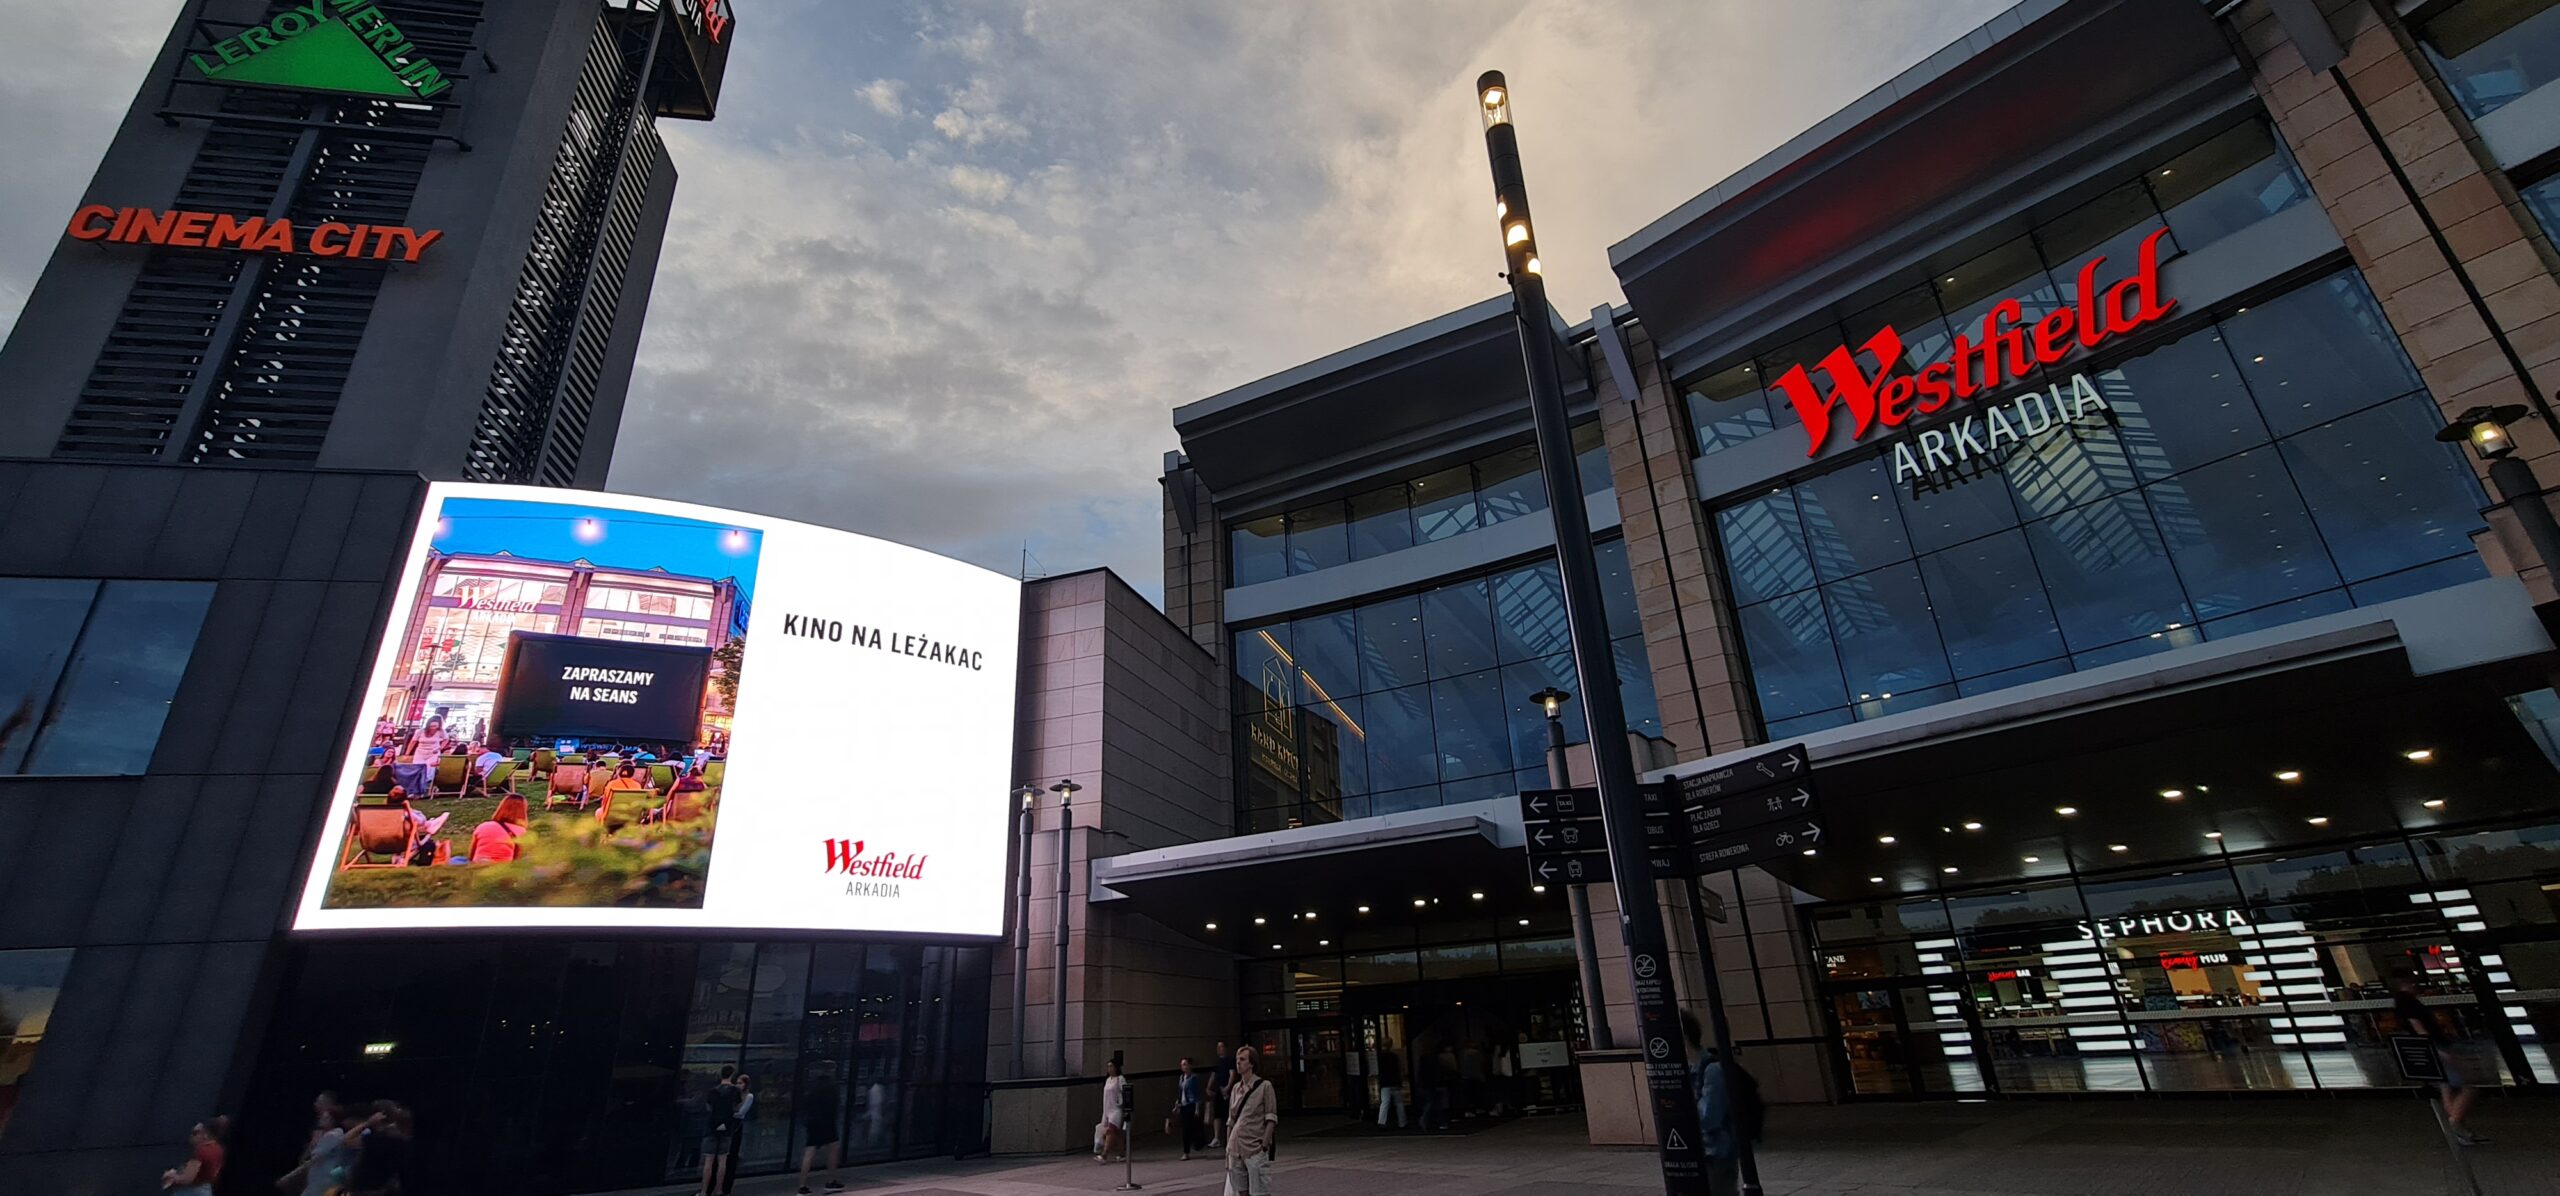 Kino na leżakach reklamowane na ekranie LED 3D na elewacji galerii Westfield Arkadia w Warszawie